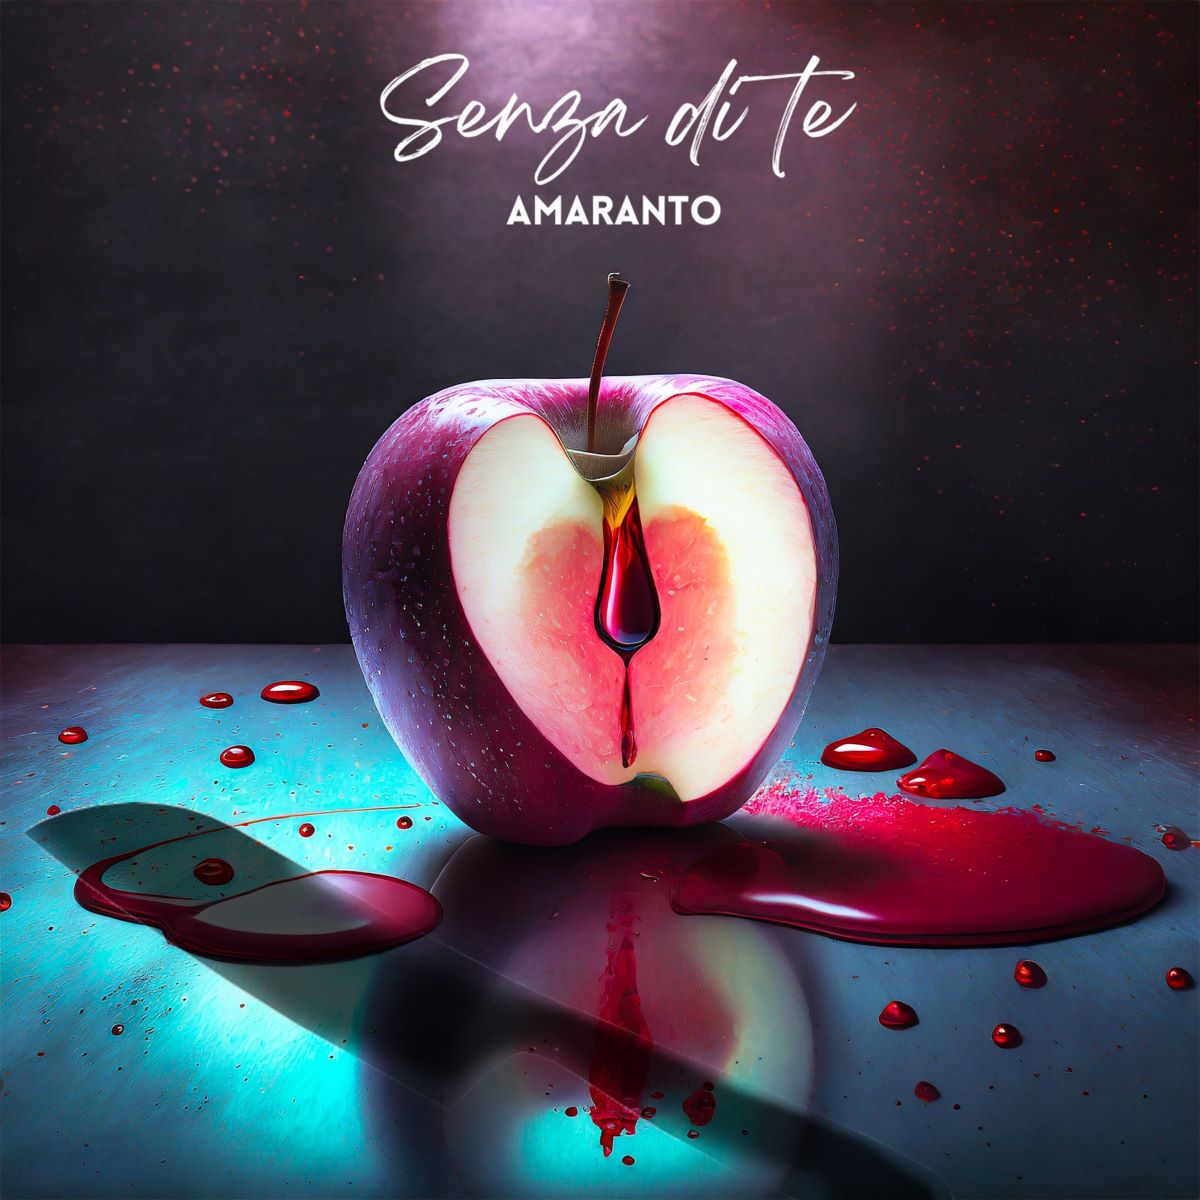 Amaranto - Il singolo “Senza di te”